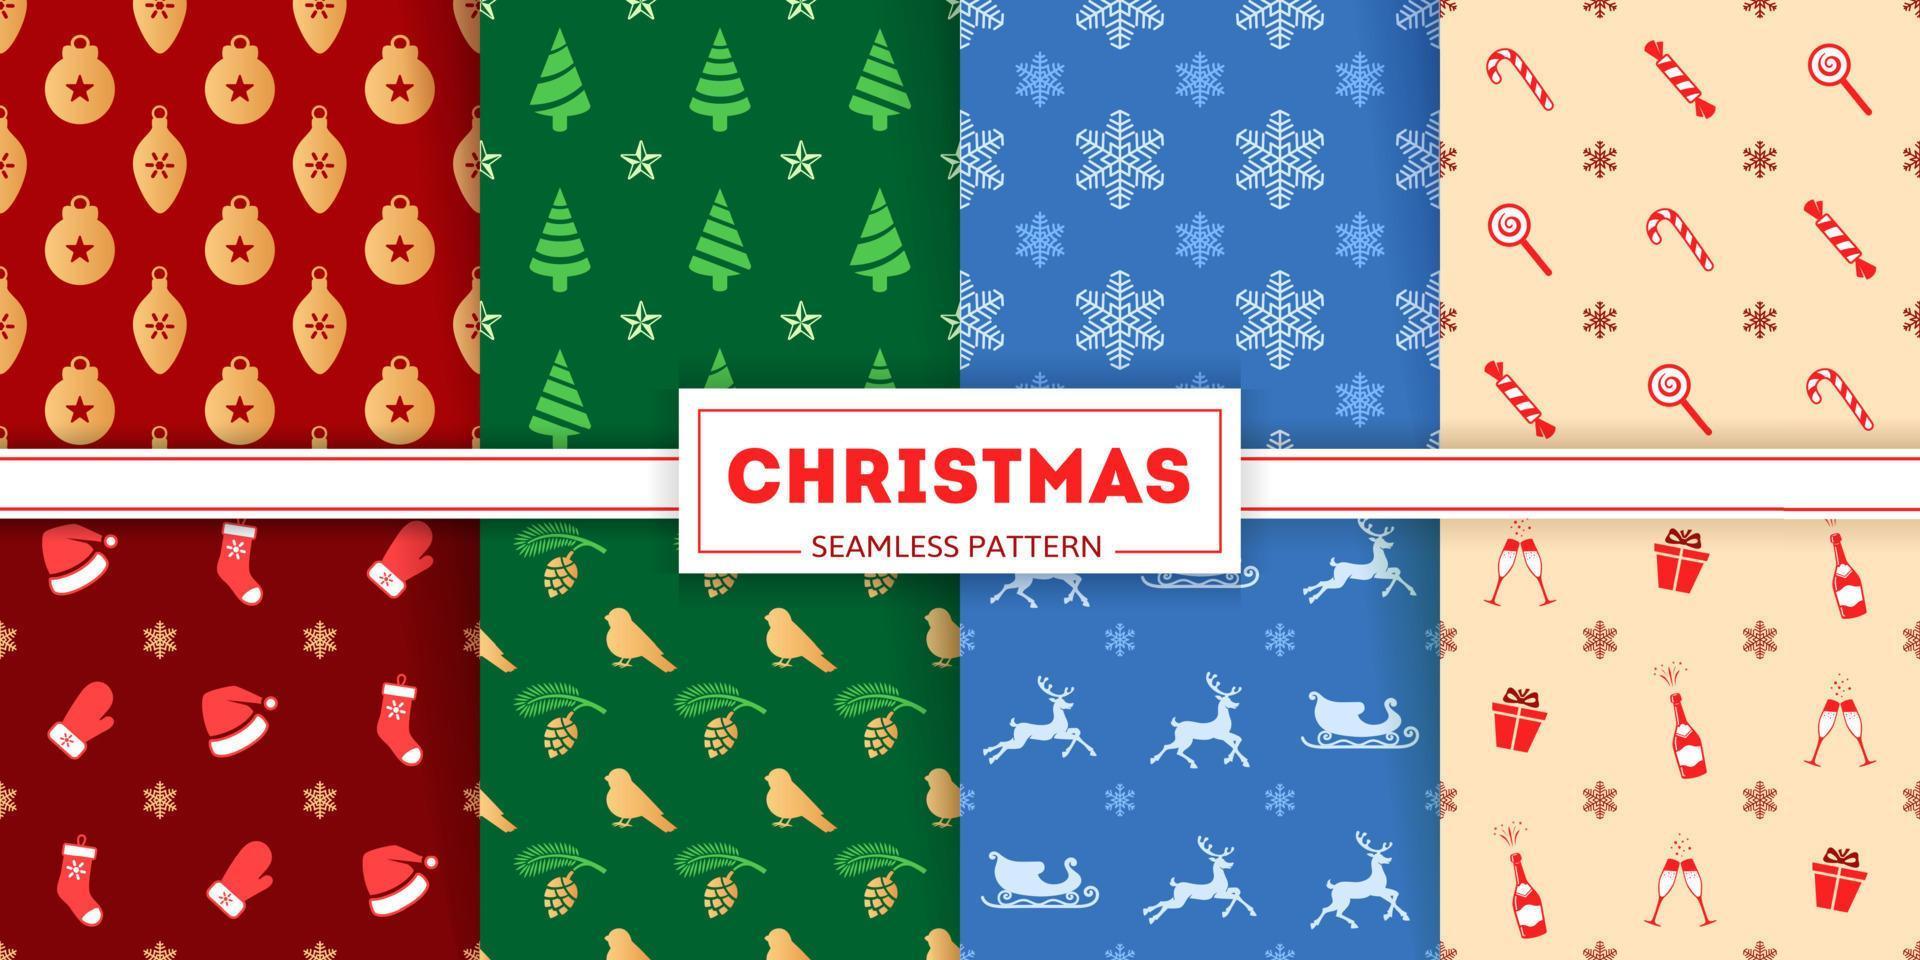 nahtlose mustersammlung für weihnachten. ikonen und silhouetten von weihnachtskugeln, weihnachtsbäumen, schneeflocken und süßigkeiten. farbenfrohe Illustrationen von Strümpfen, Geschenkboxen und Hirschen. weihnachtliche Texturen vektor